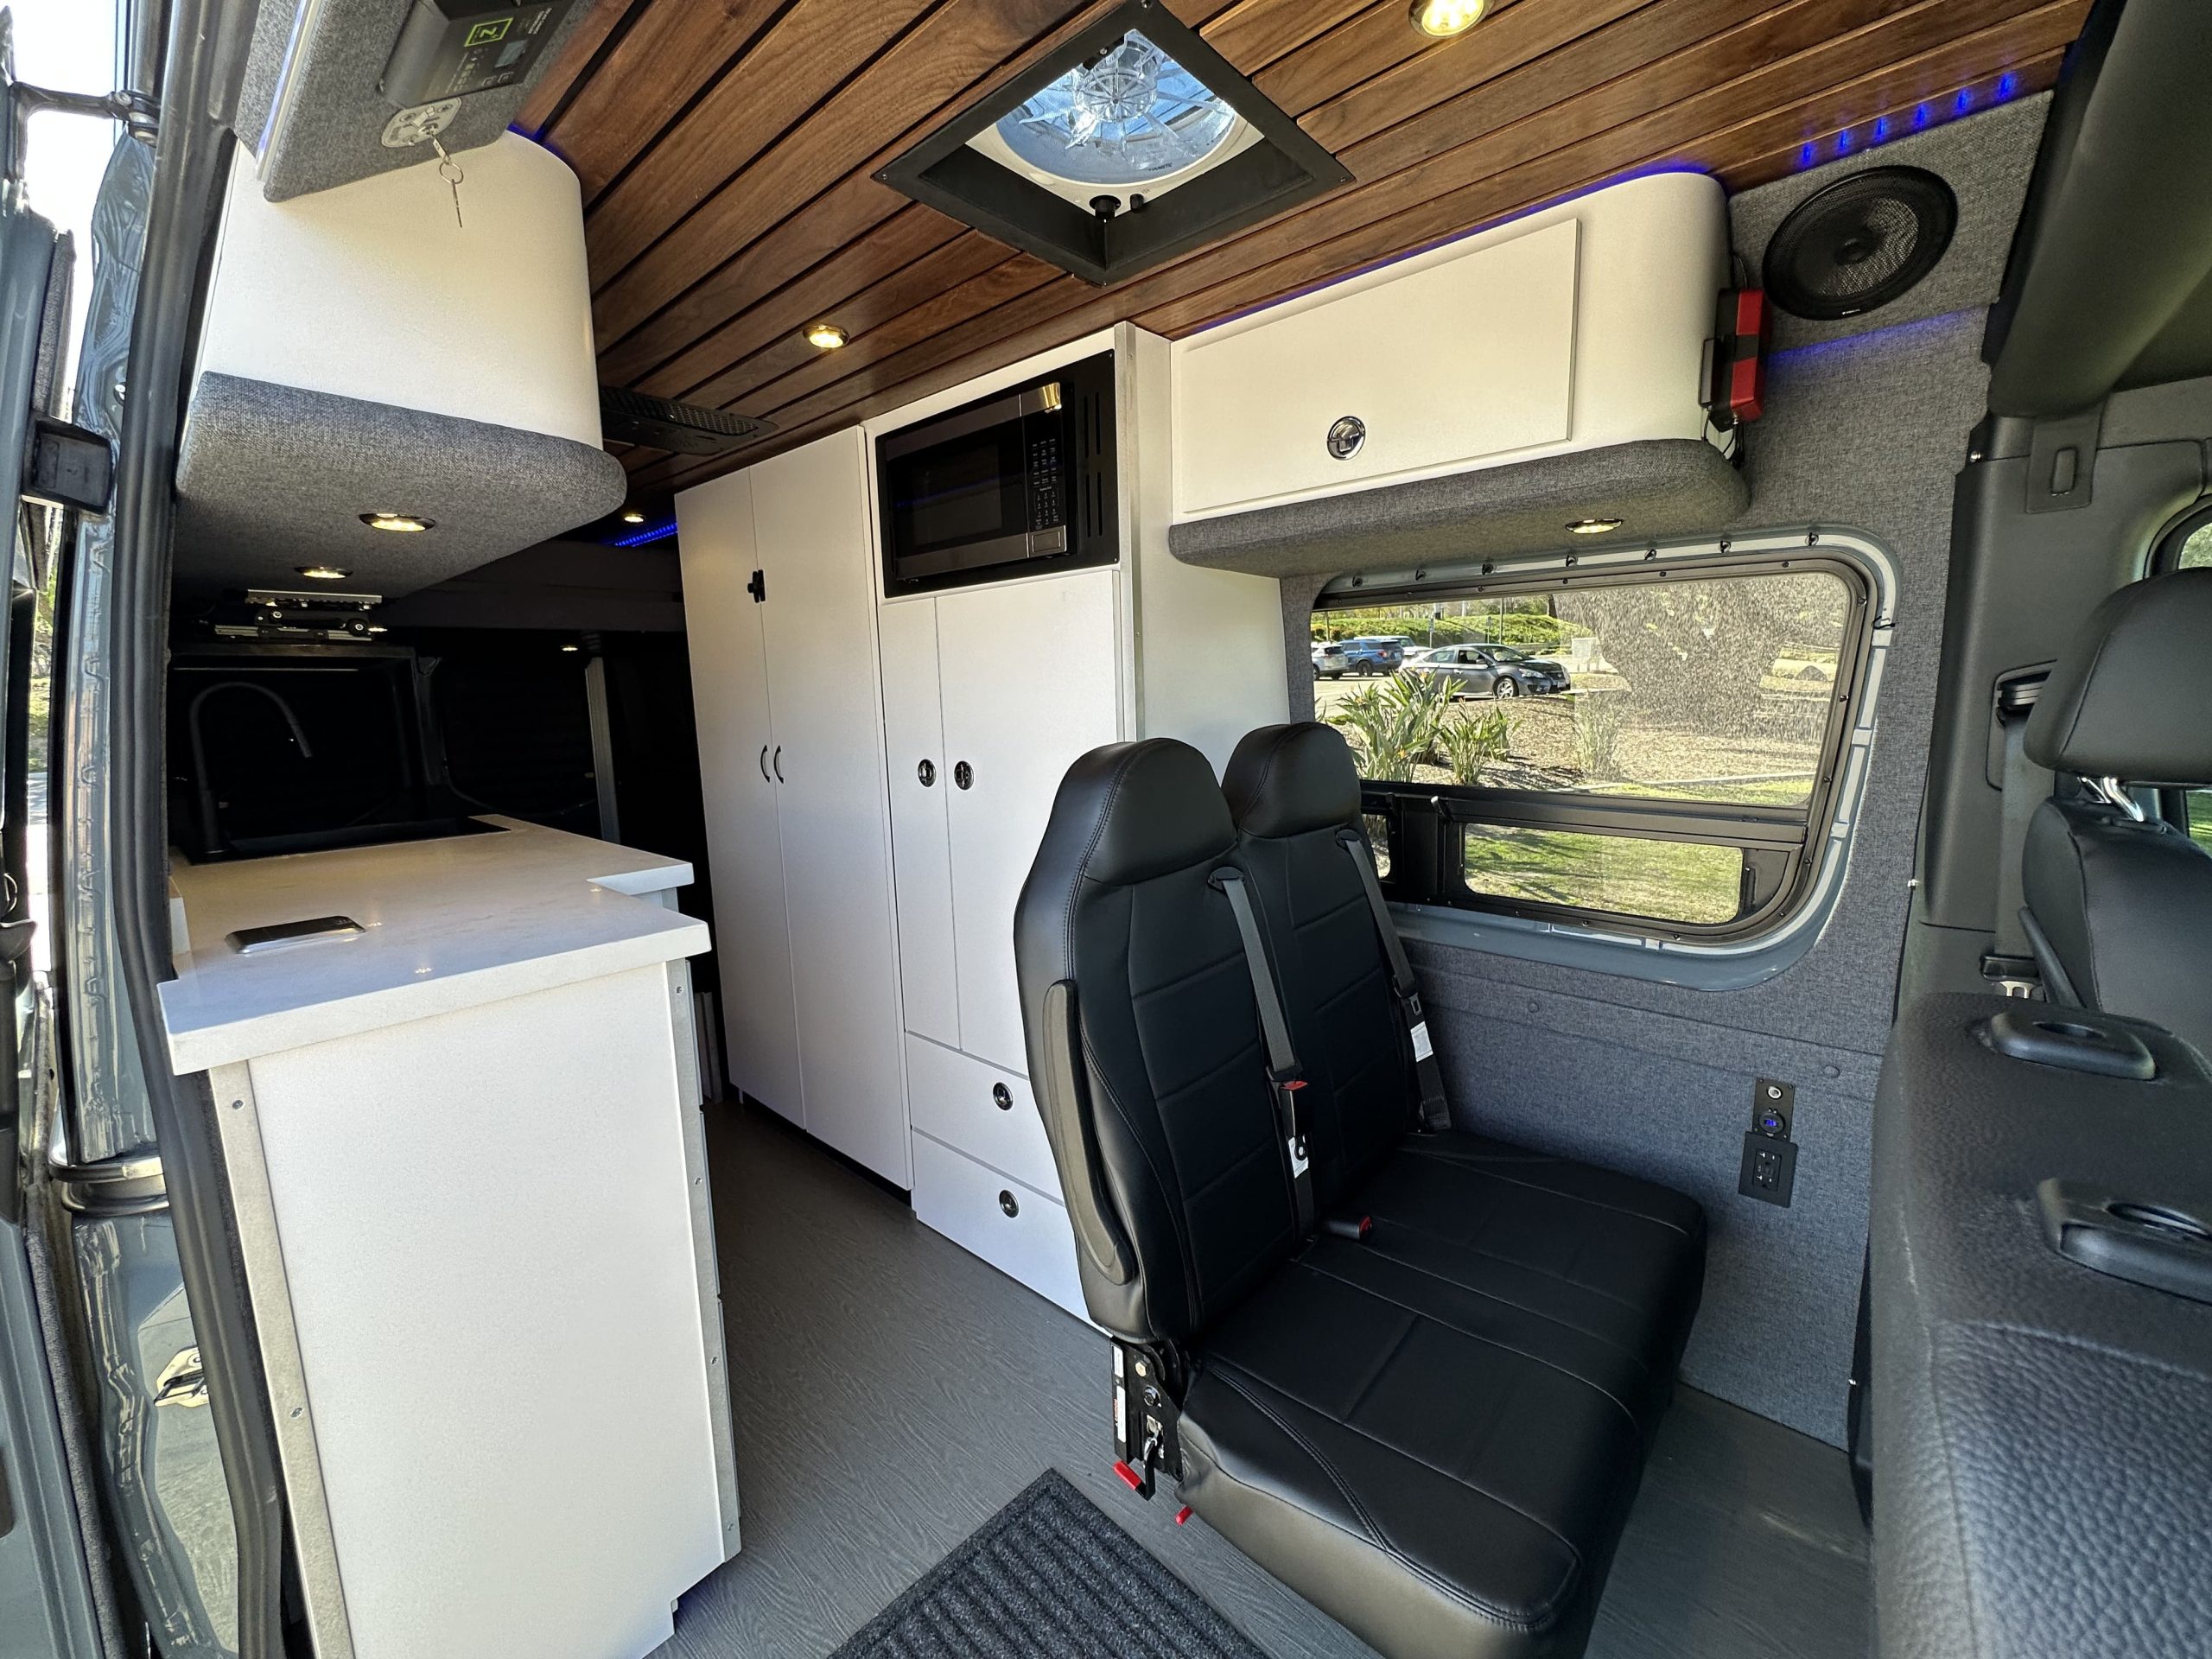 inside a campervan